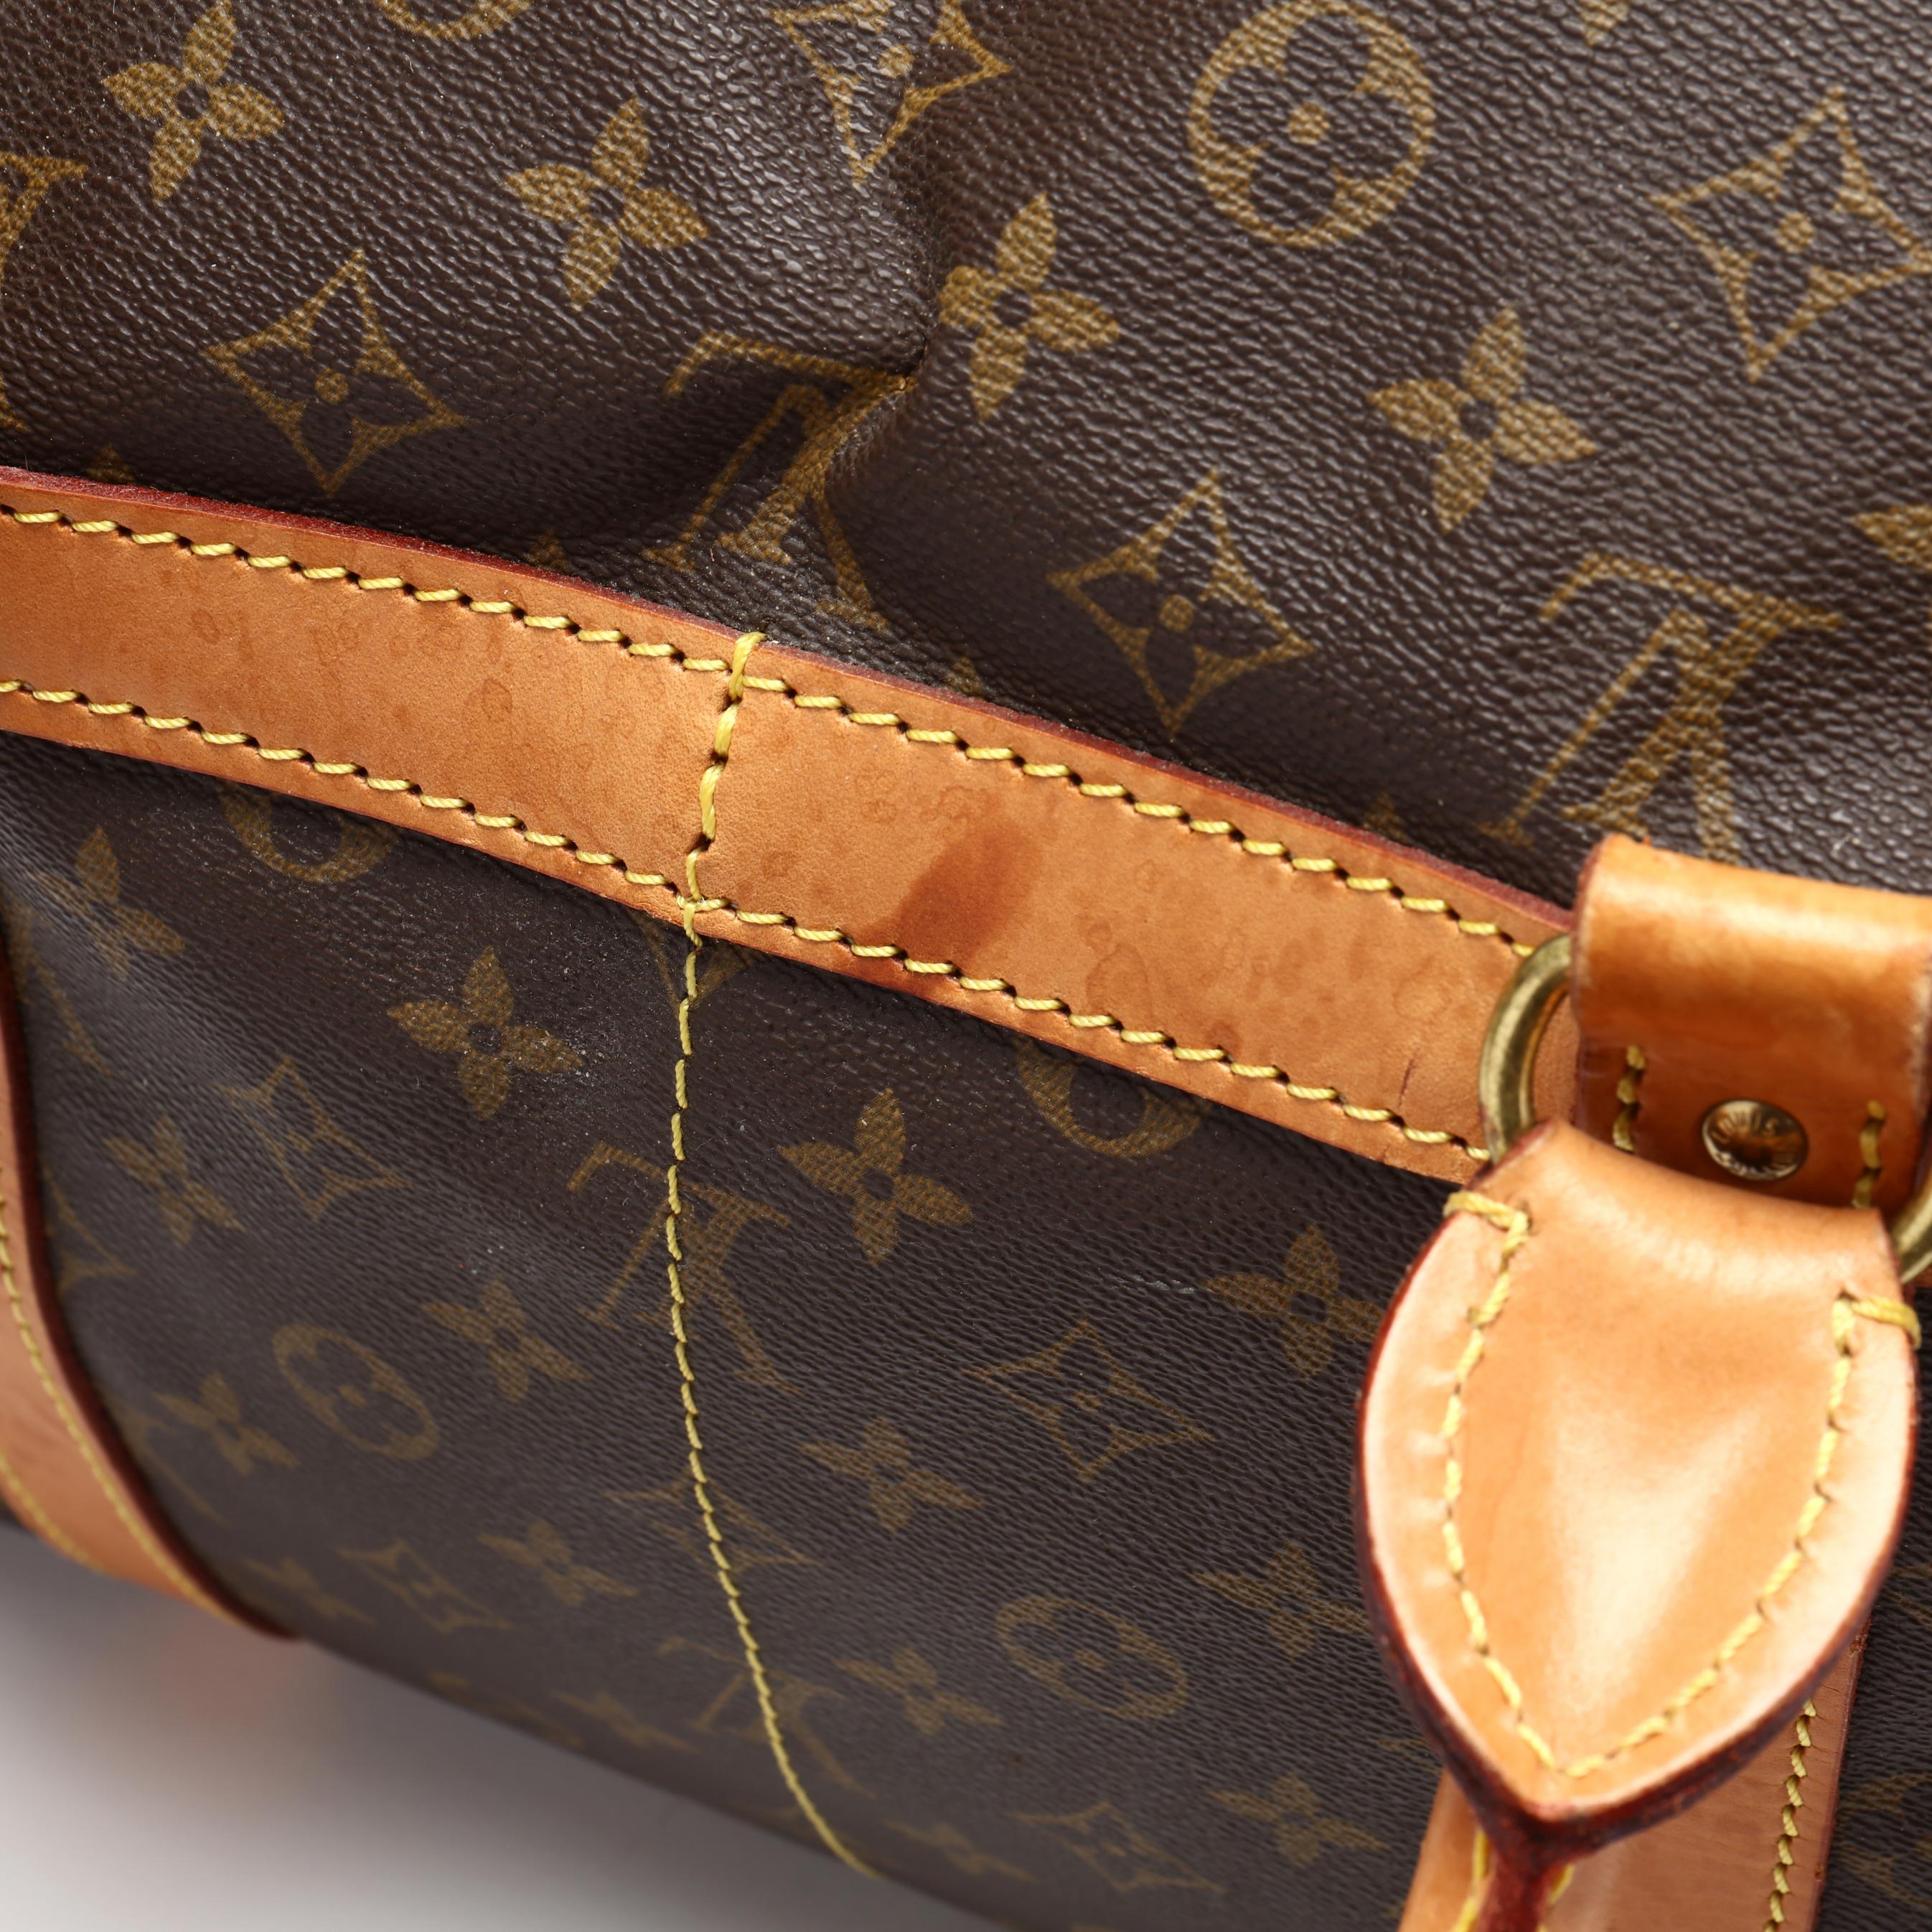 Vintage Louis Vuitton Sac Demi-Souple Weekend Travel Bag (Lot 2053